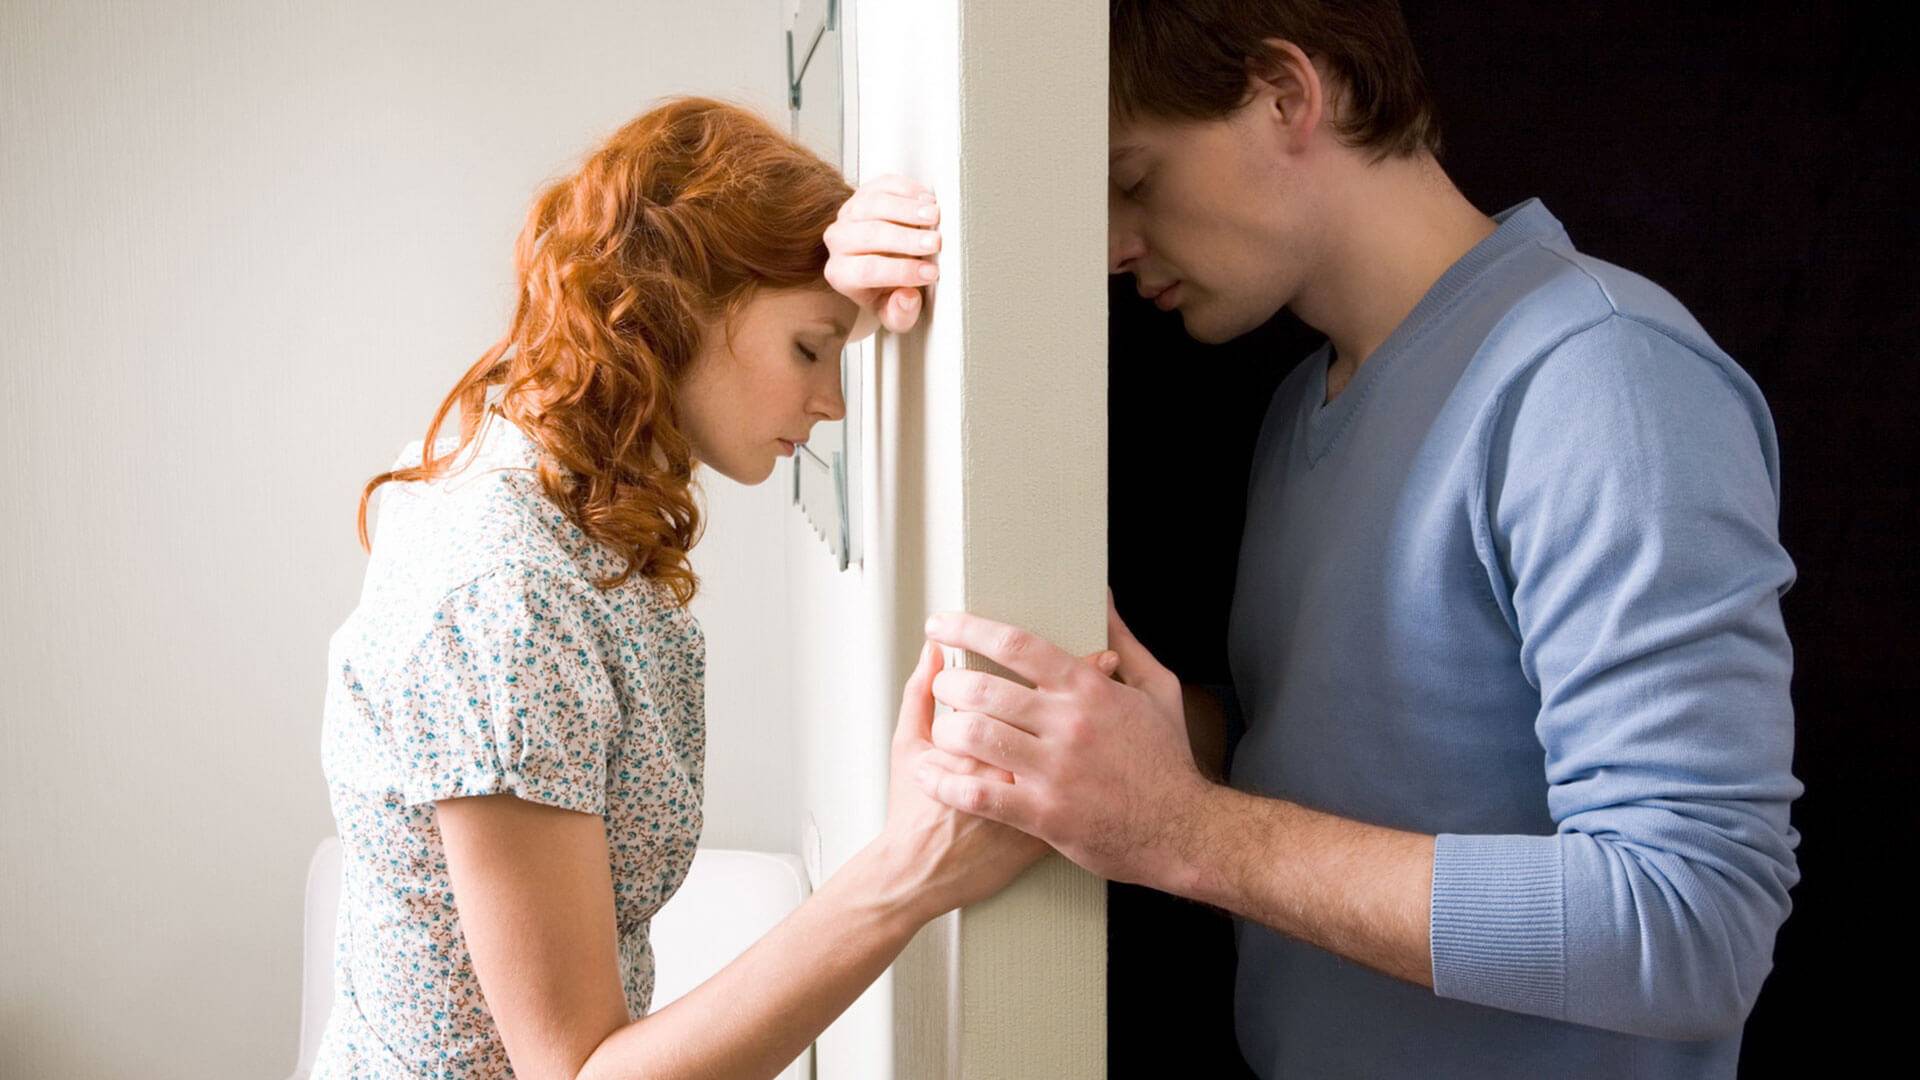 12 советов, как наладить отношения с парнем, если они дали трещину | lovetrue.ru